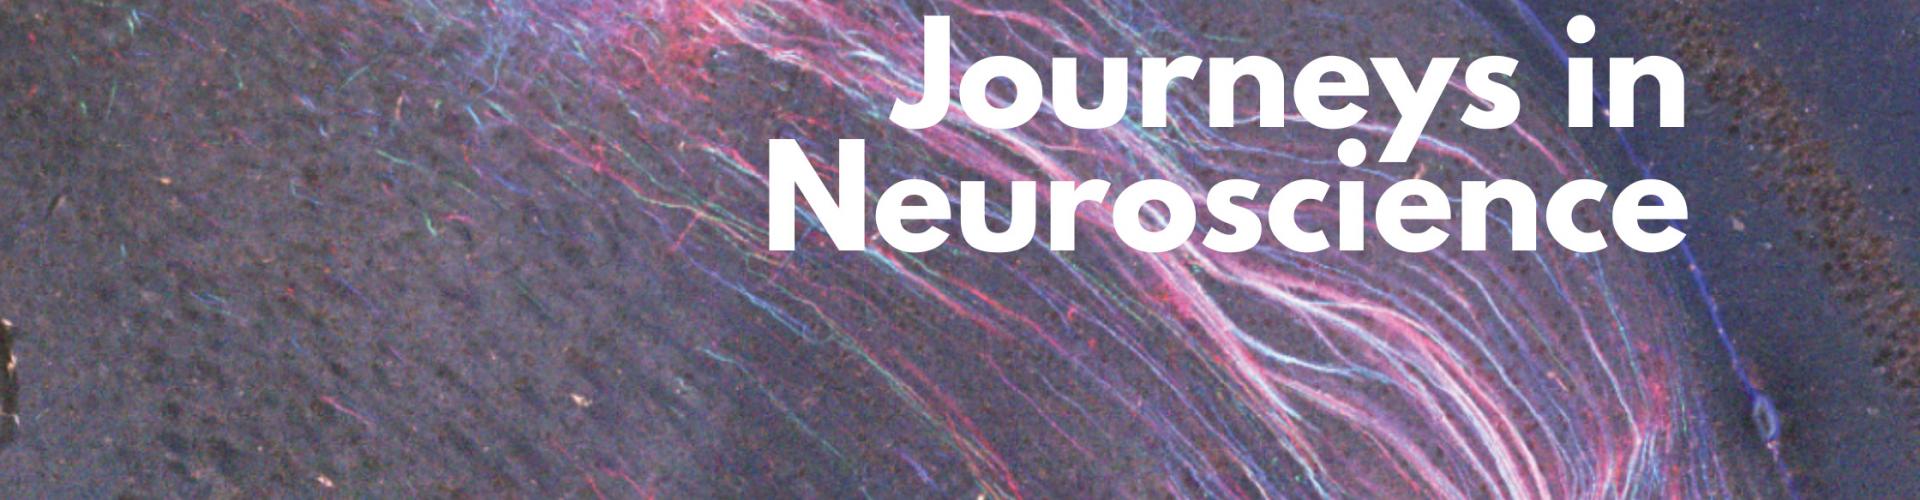 Journeys in Neuroscience Blog Banner